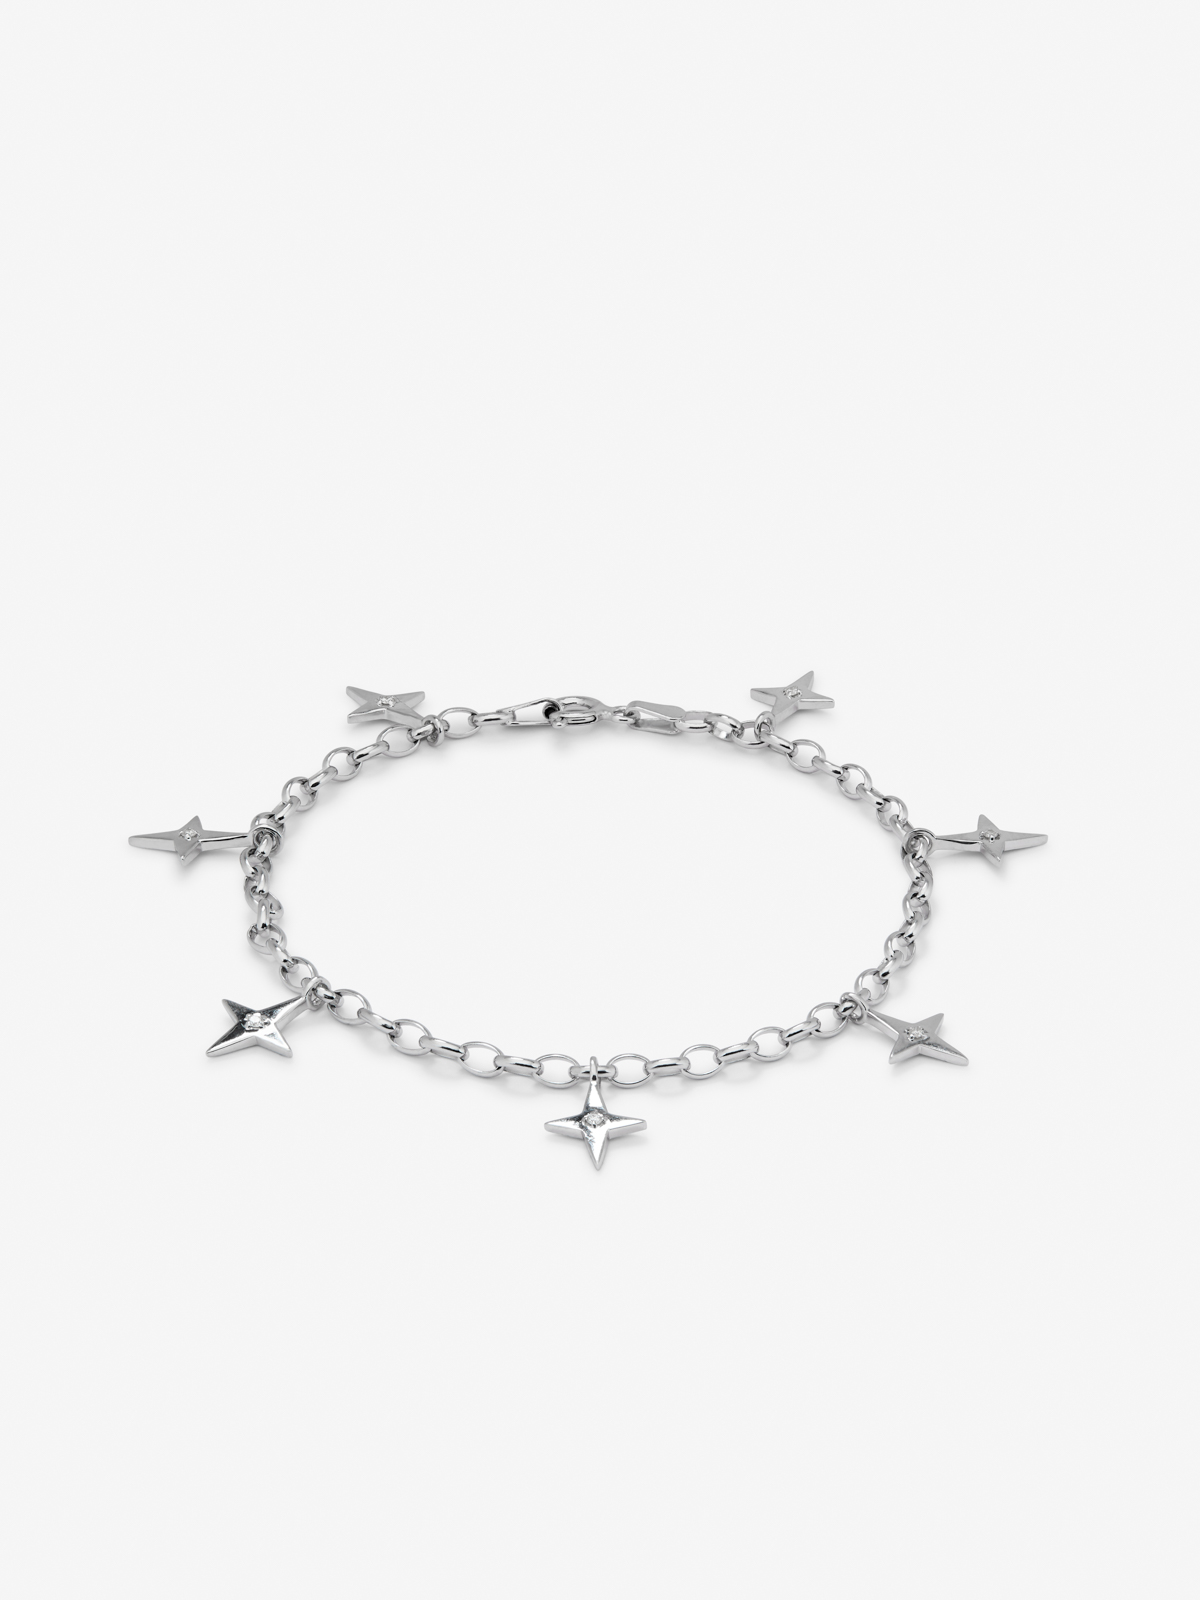 Silver star bracelet with diamonds